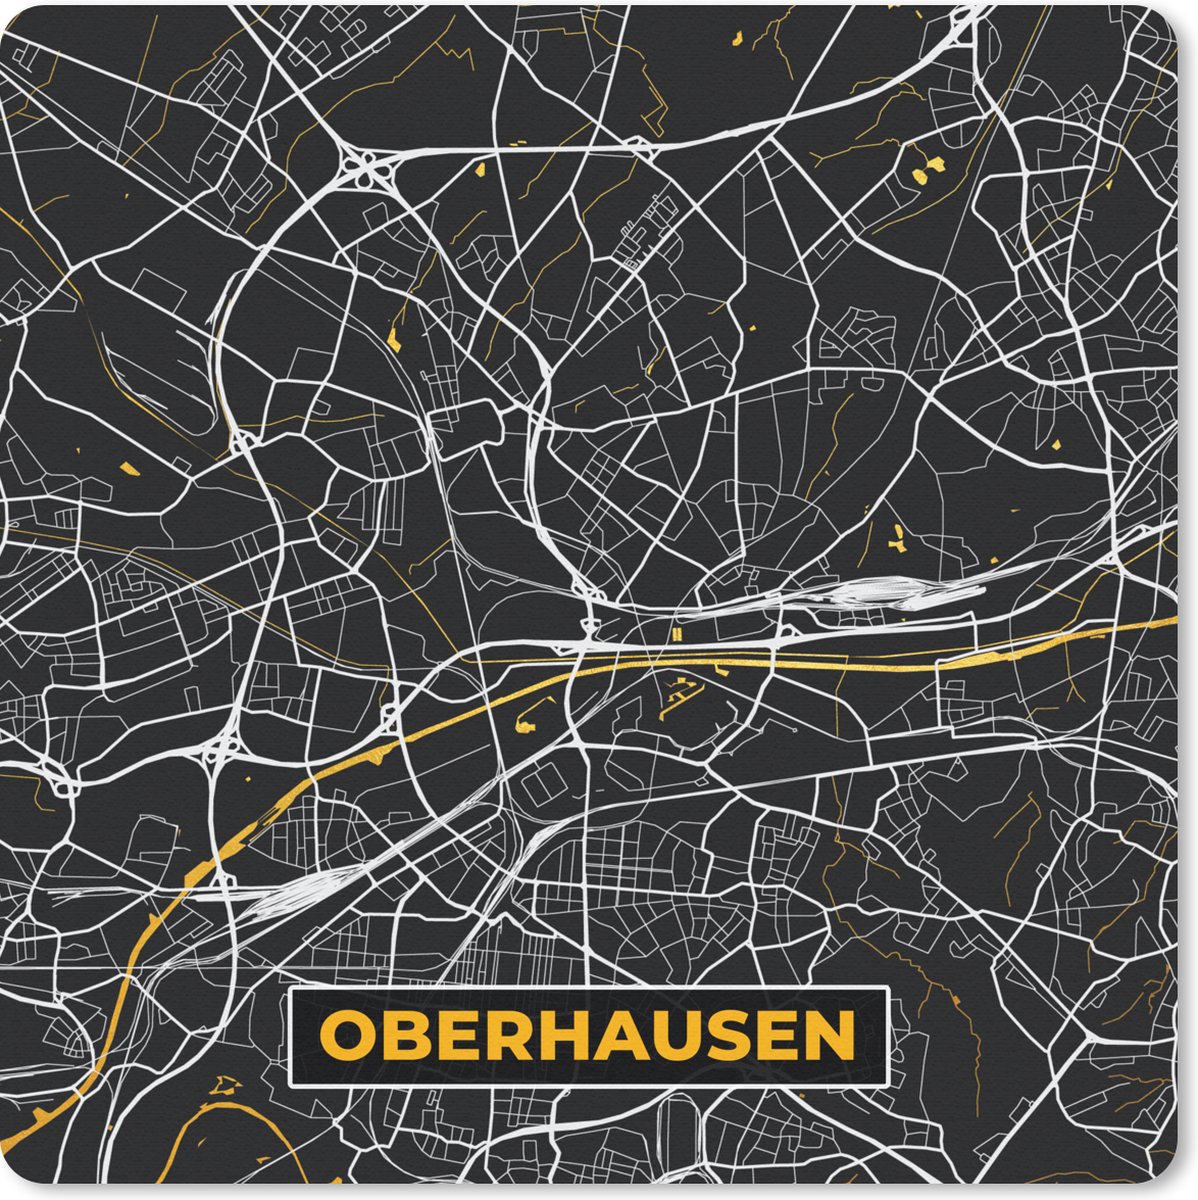 Muismat Klein - Oberhausen - Stadskaart - Plattegrond - Kaart - Goud - Duitsland - 20x20 cm